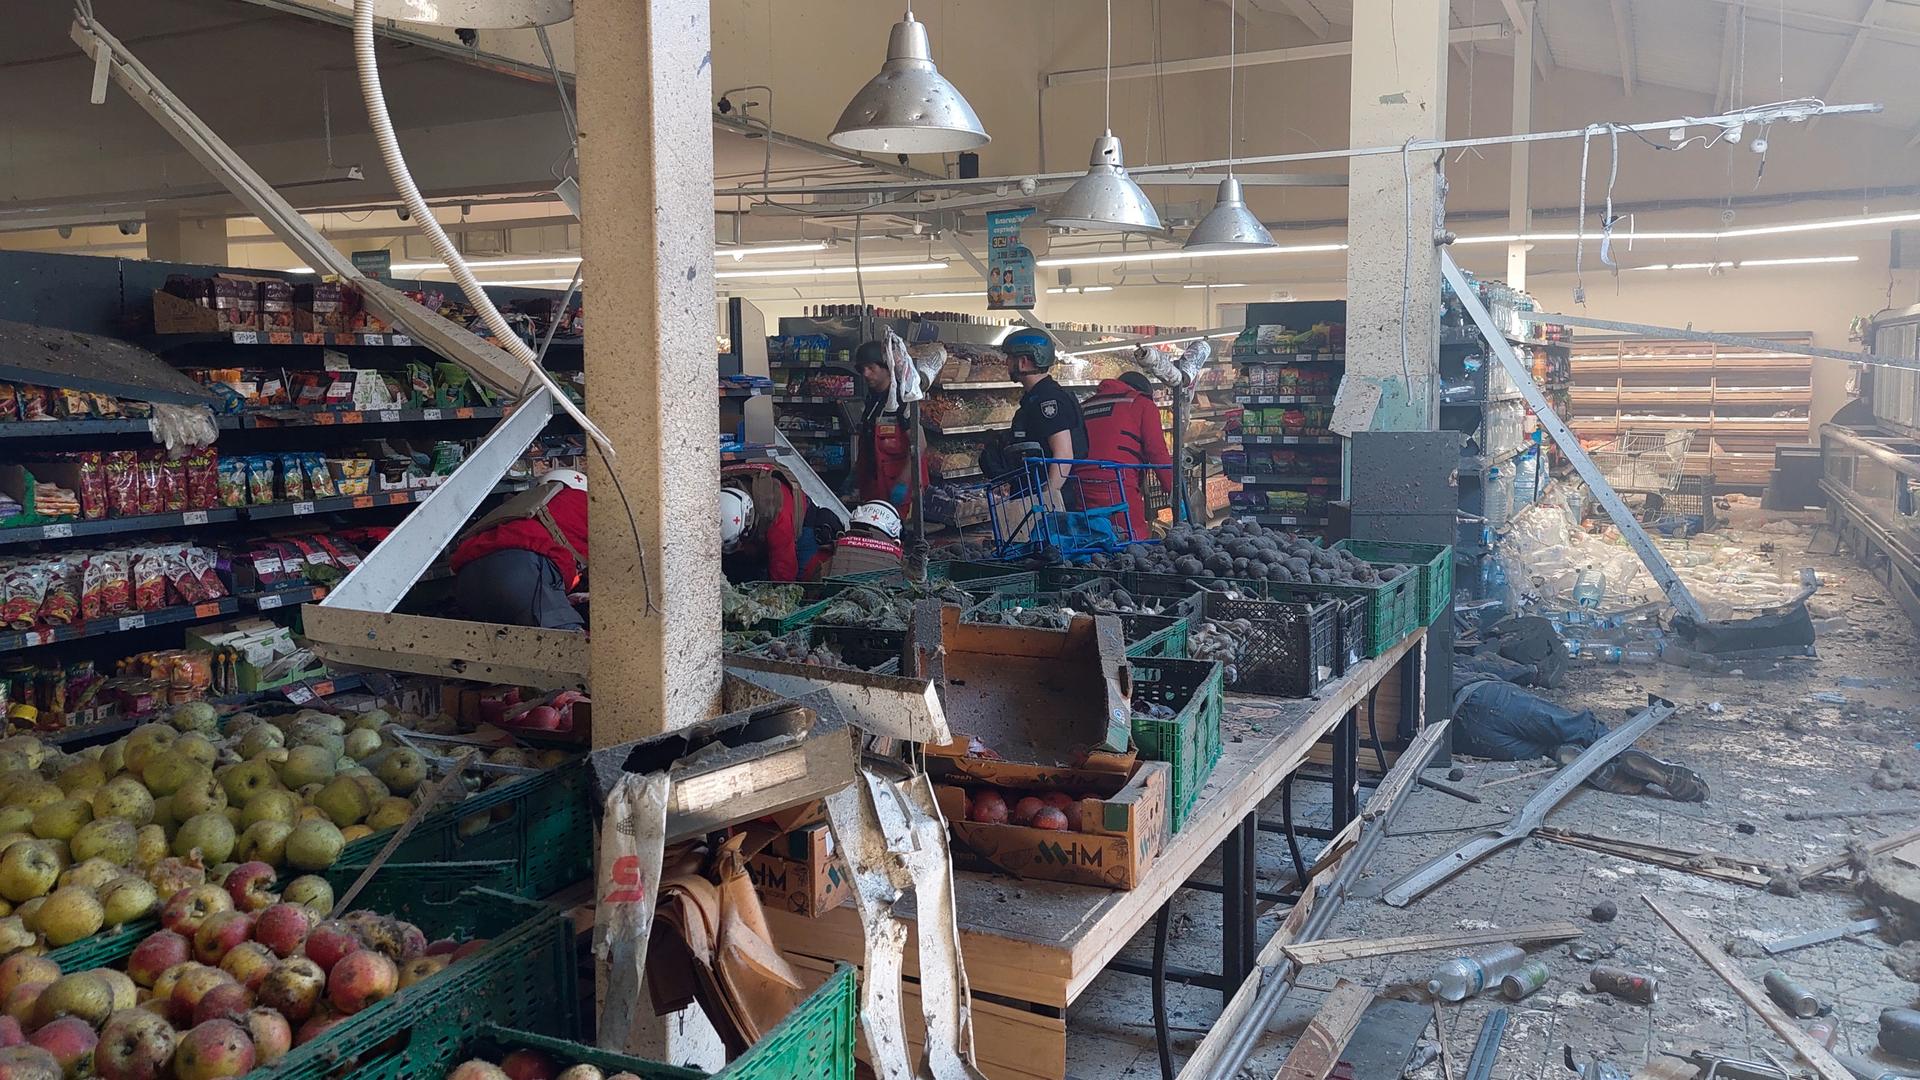 Blick in de schwer beschädigten und verstaubten Laden, in dem noch Obst und andere Güter in den Regalen liegen.